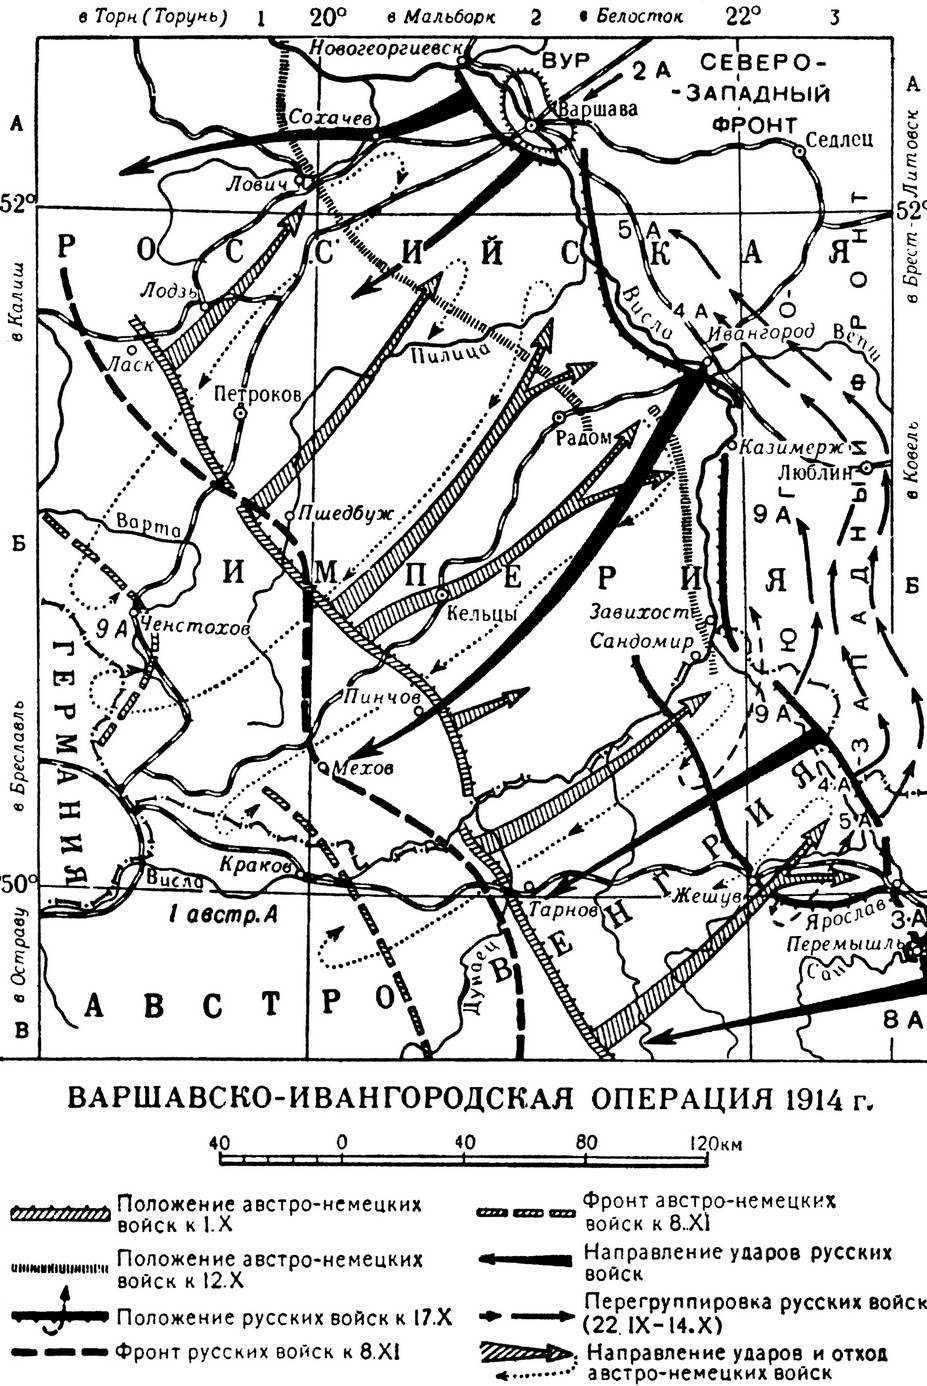 ВАРШАВСКО-ИВАНГОРОДСКАЯ ОПЕРАЦИЯ 1914